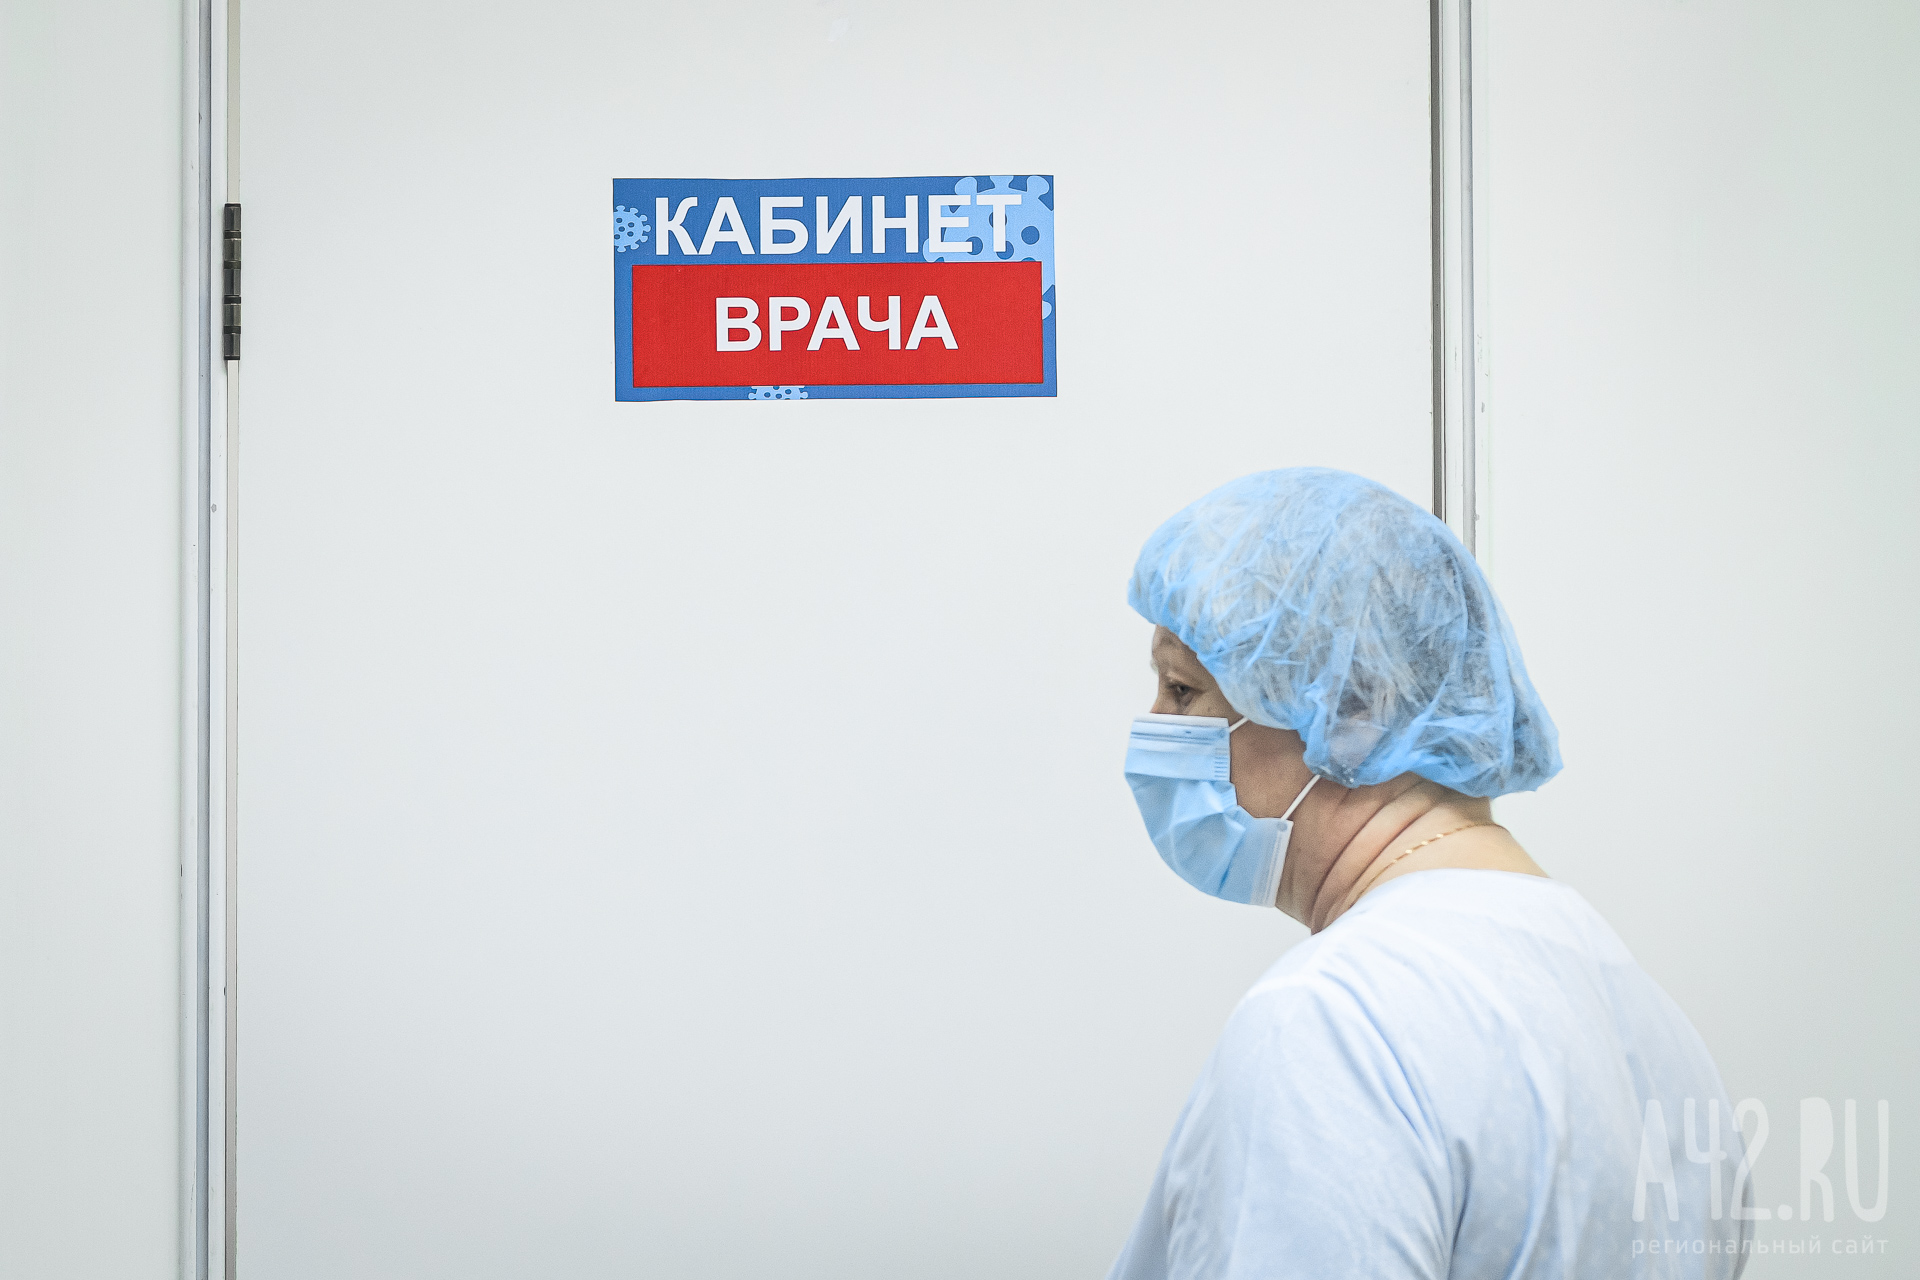 В Кузбассе продолжают умирать пациенты с коронавирусом. Опубликована новая сводка